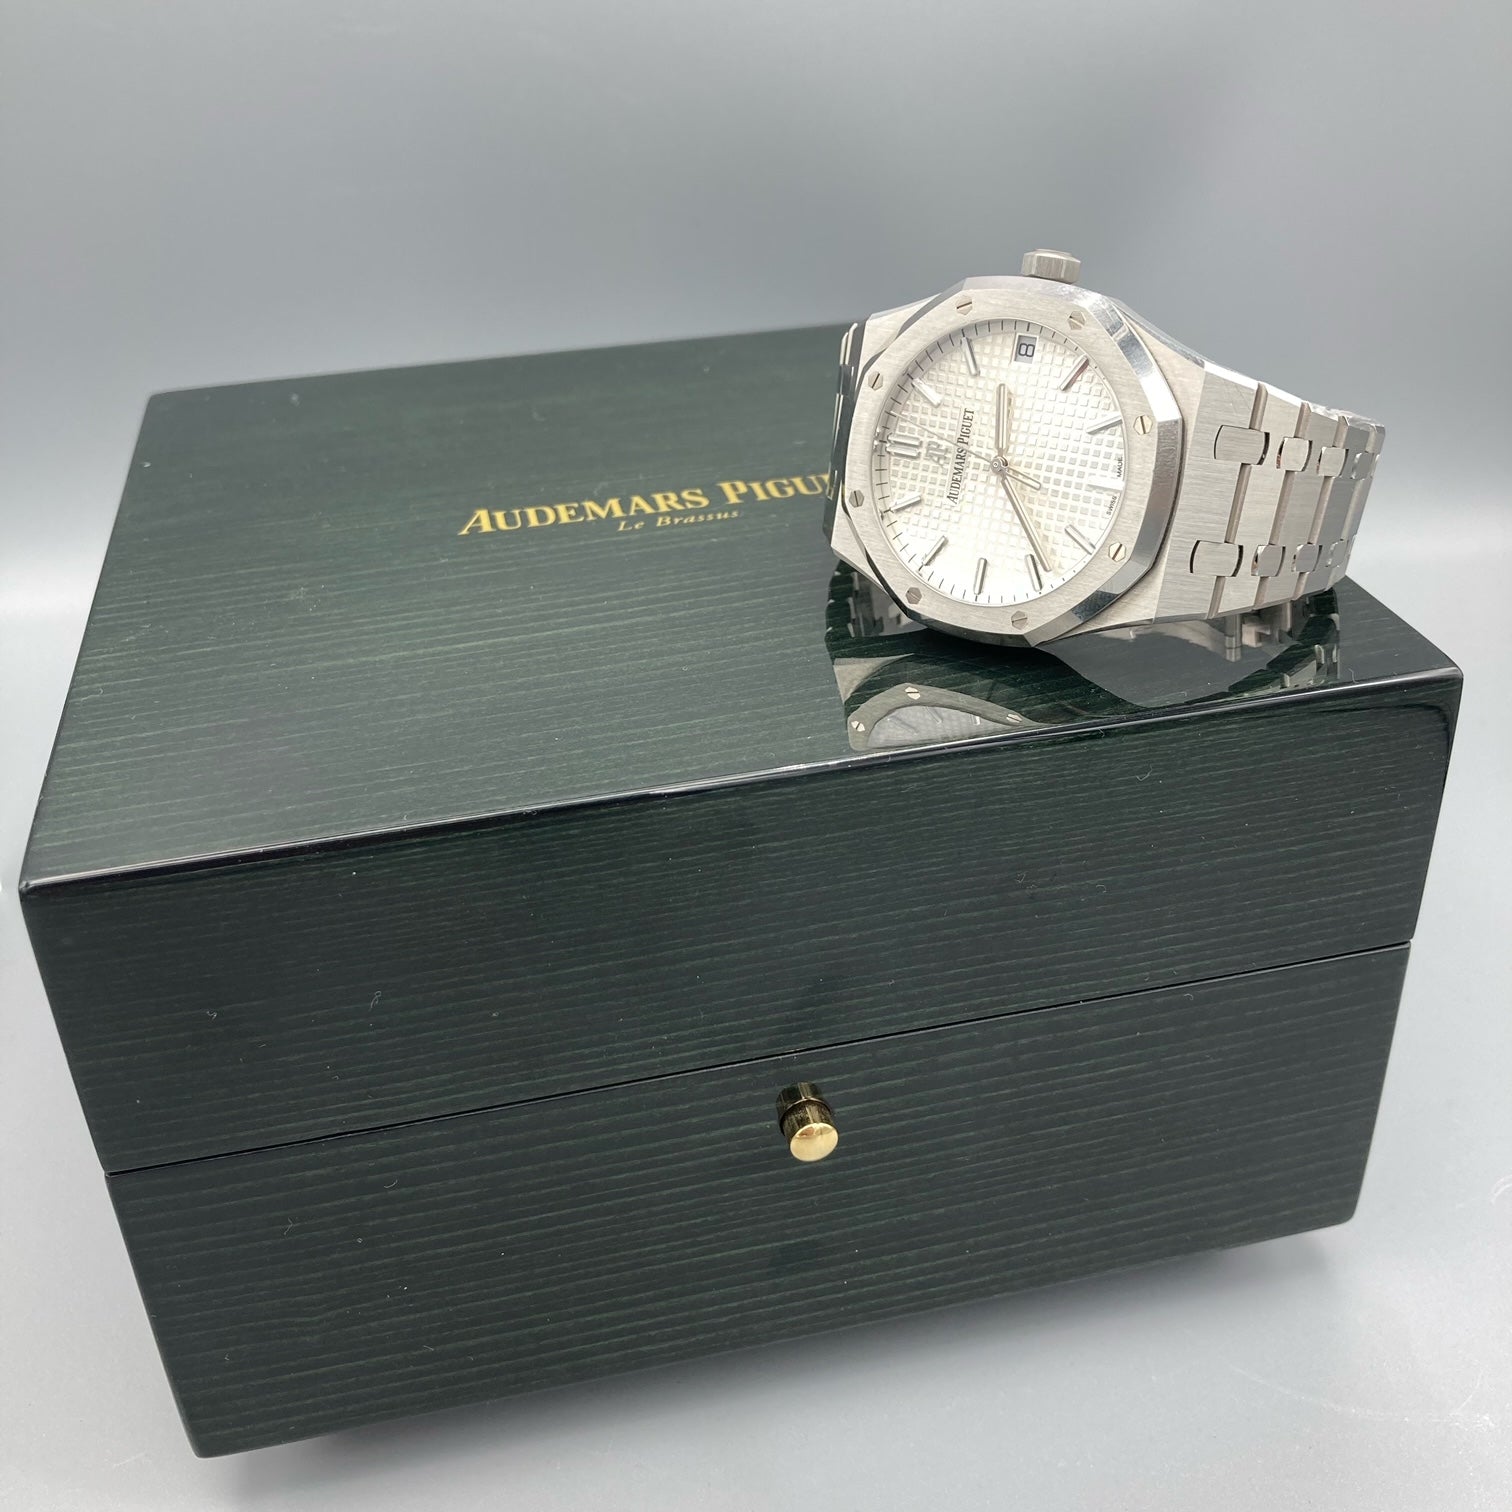 Audemars Piguet Royal Oak Silver Men's Watch - 15500ST.OO.1220ST.04